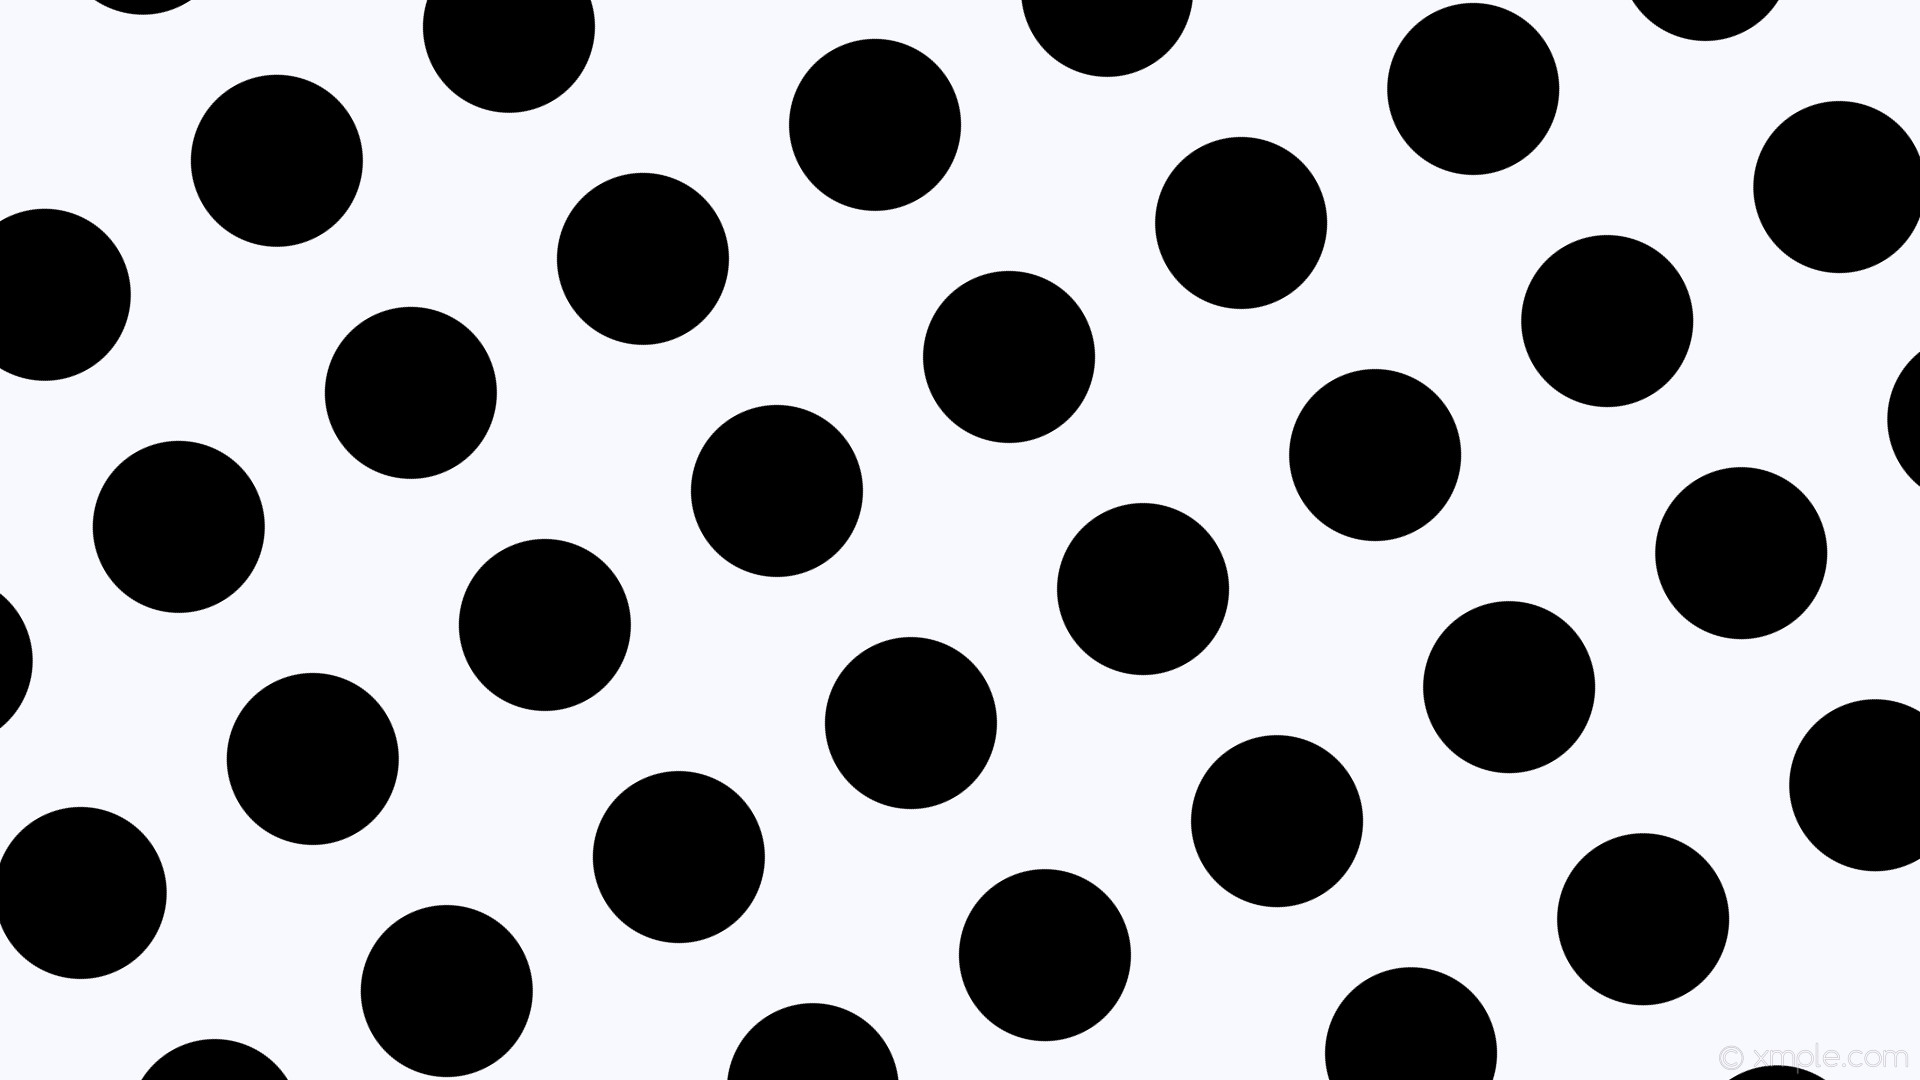 1920x1080 wallpaper dots white polka black spots ghost white #f8f8ff #000000 210Â°  172px 268px